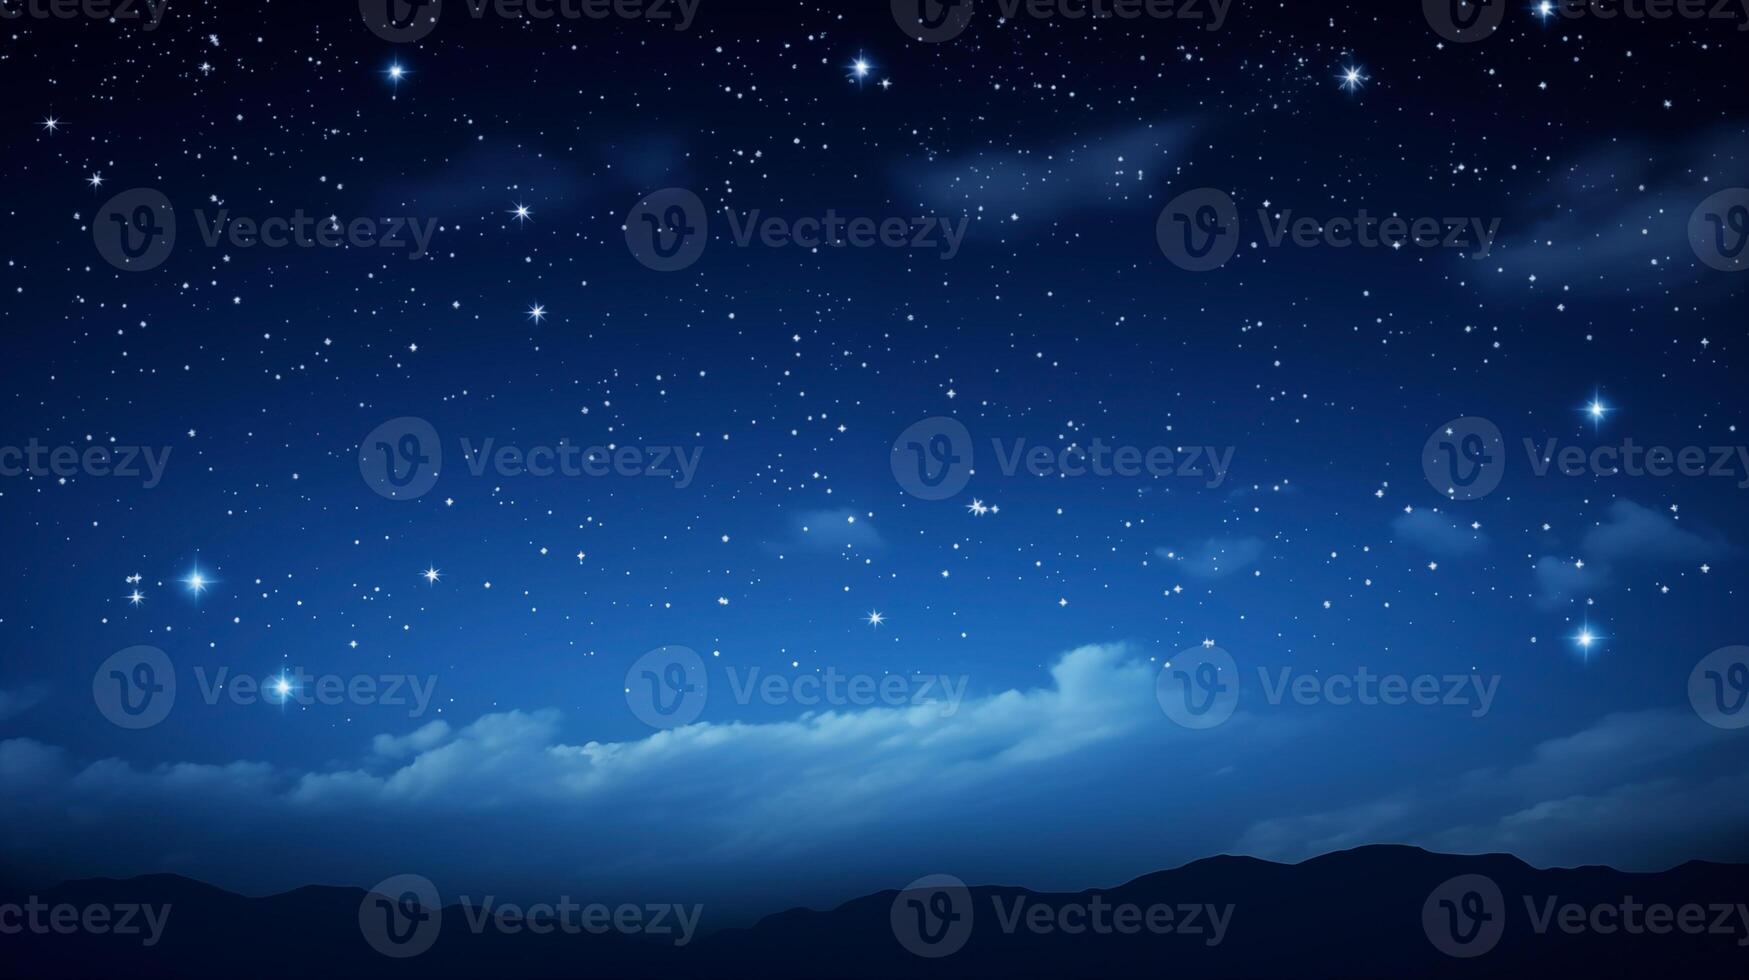 brilhando estrelado fundo com azul noite céu e montanha silhueta foto